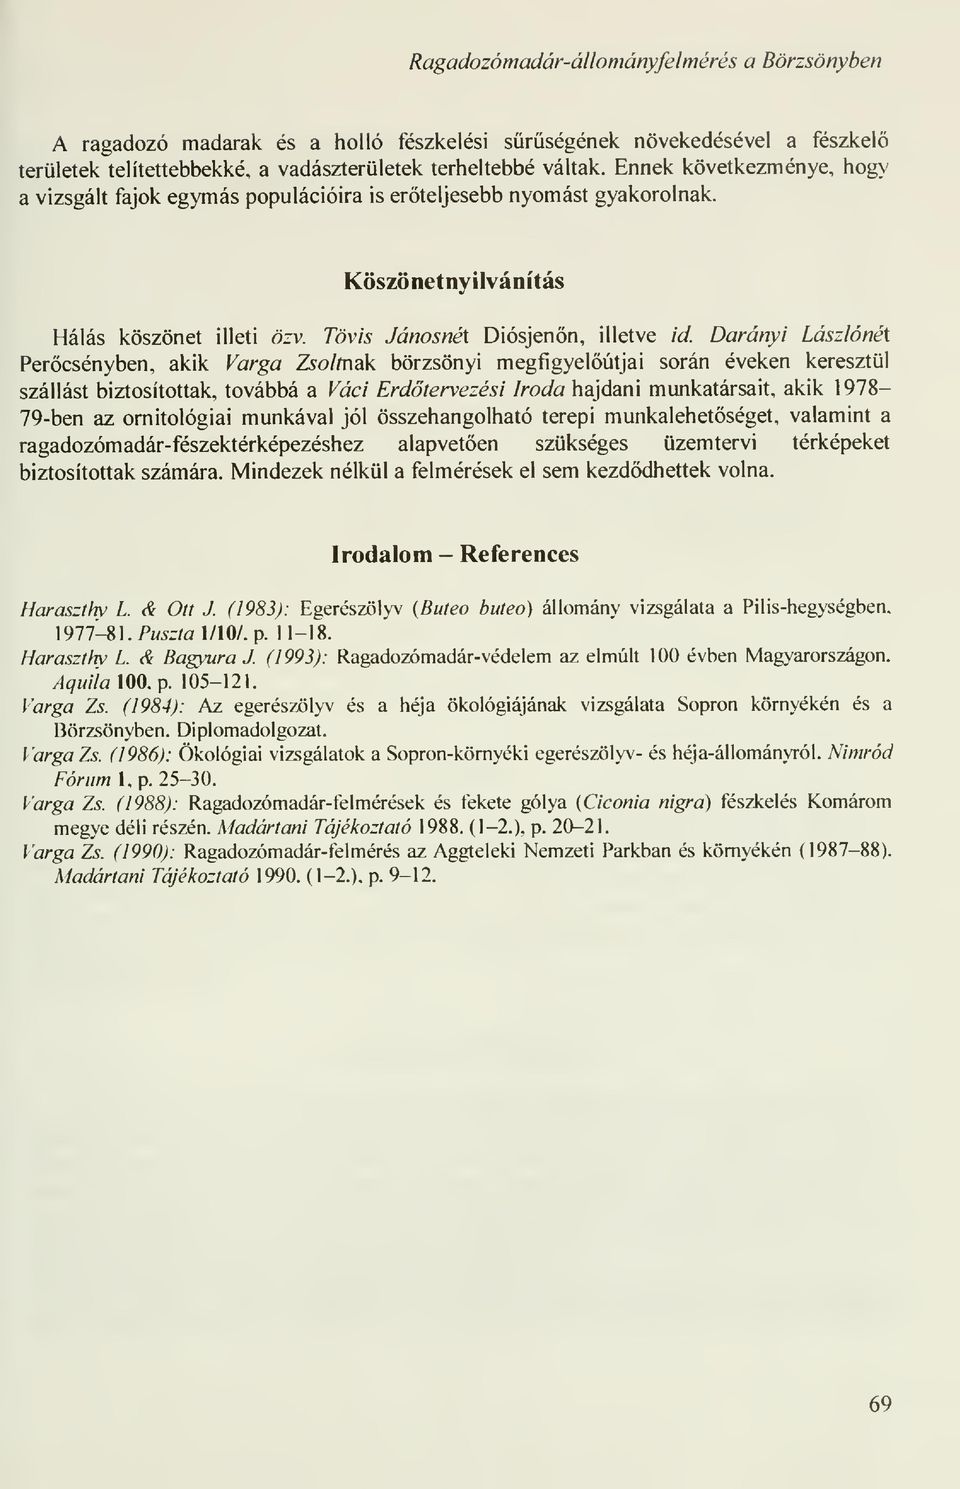 Darányi LászlónéX Percsényben, akik Varga Zsoltnak börzsönyi megfigyelútjai során éveken keresztül szállást biztosítottak, továbbá a Váci Erdtervezési Iroda hajdani munkatársait, akik 1978-79-ben az